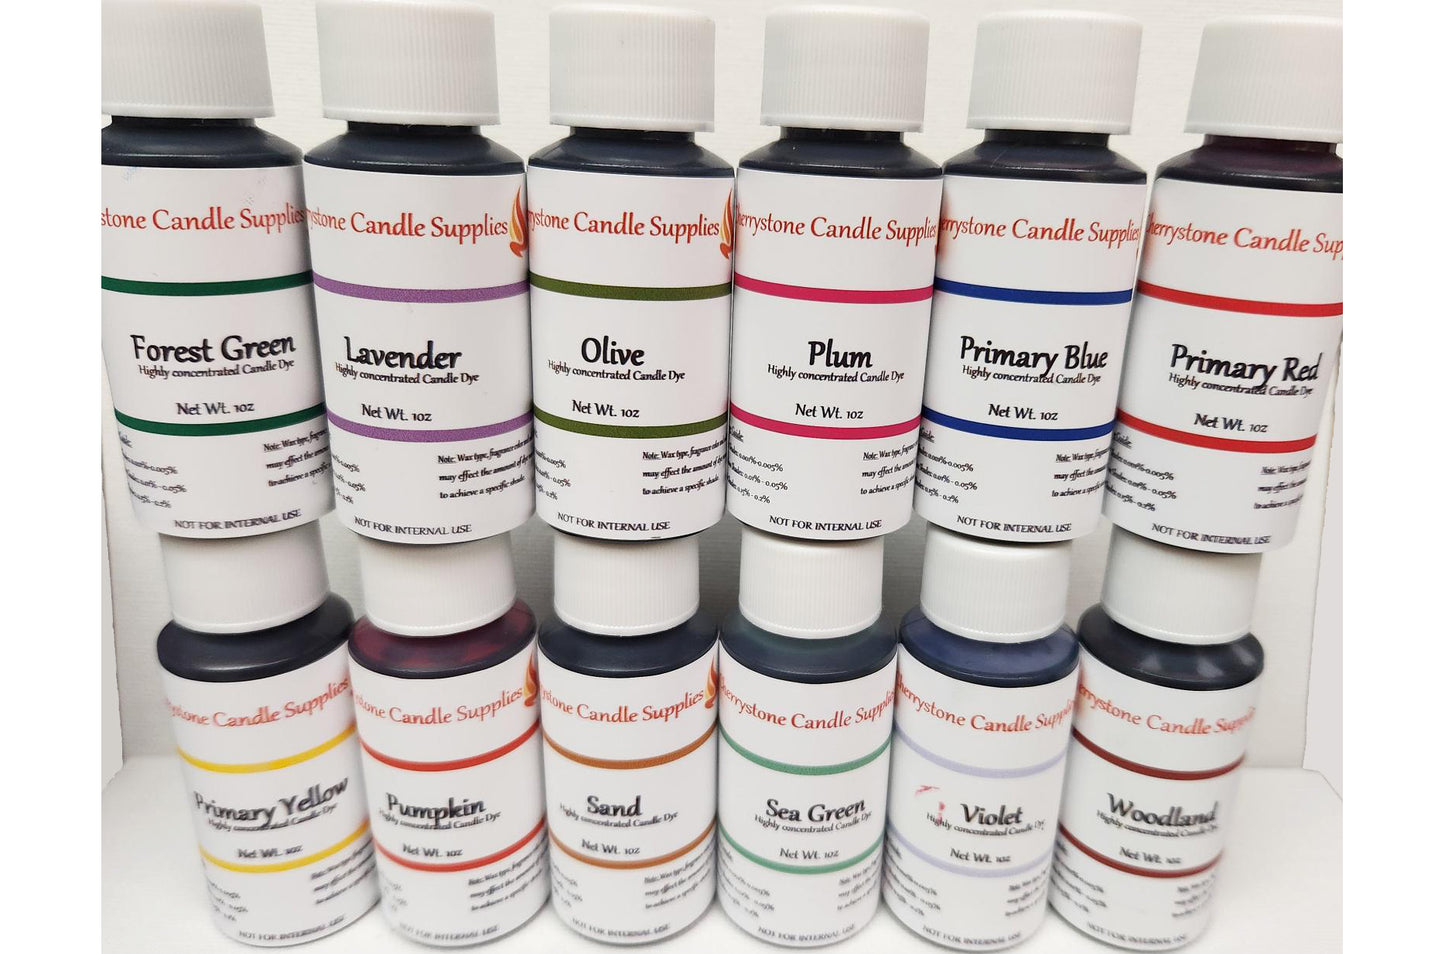 Liquid Dye Pack - Set of 12 Colors